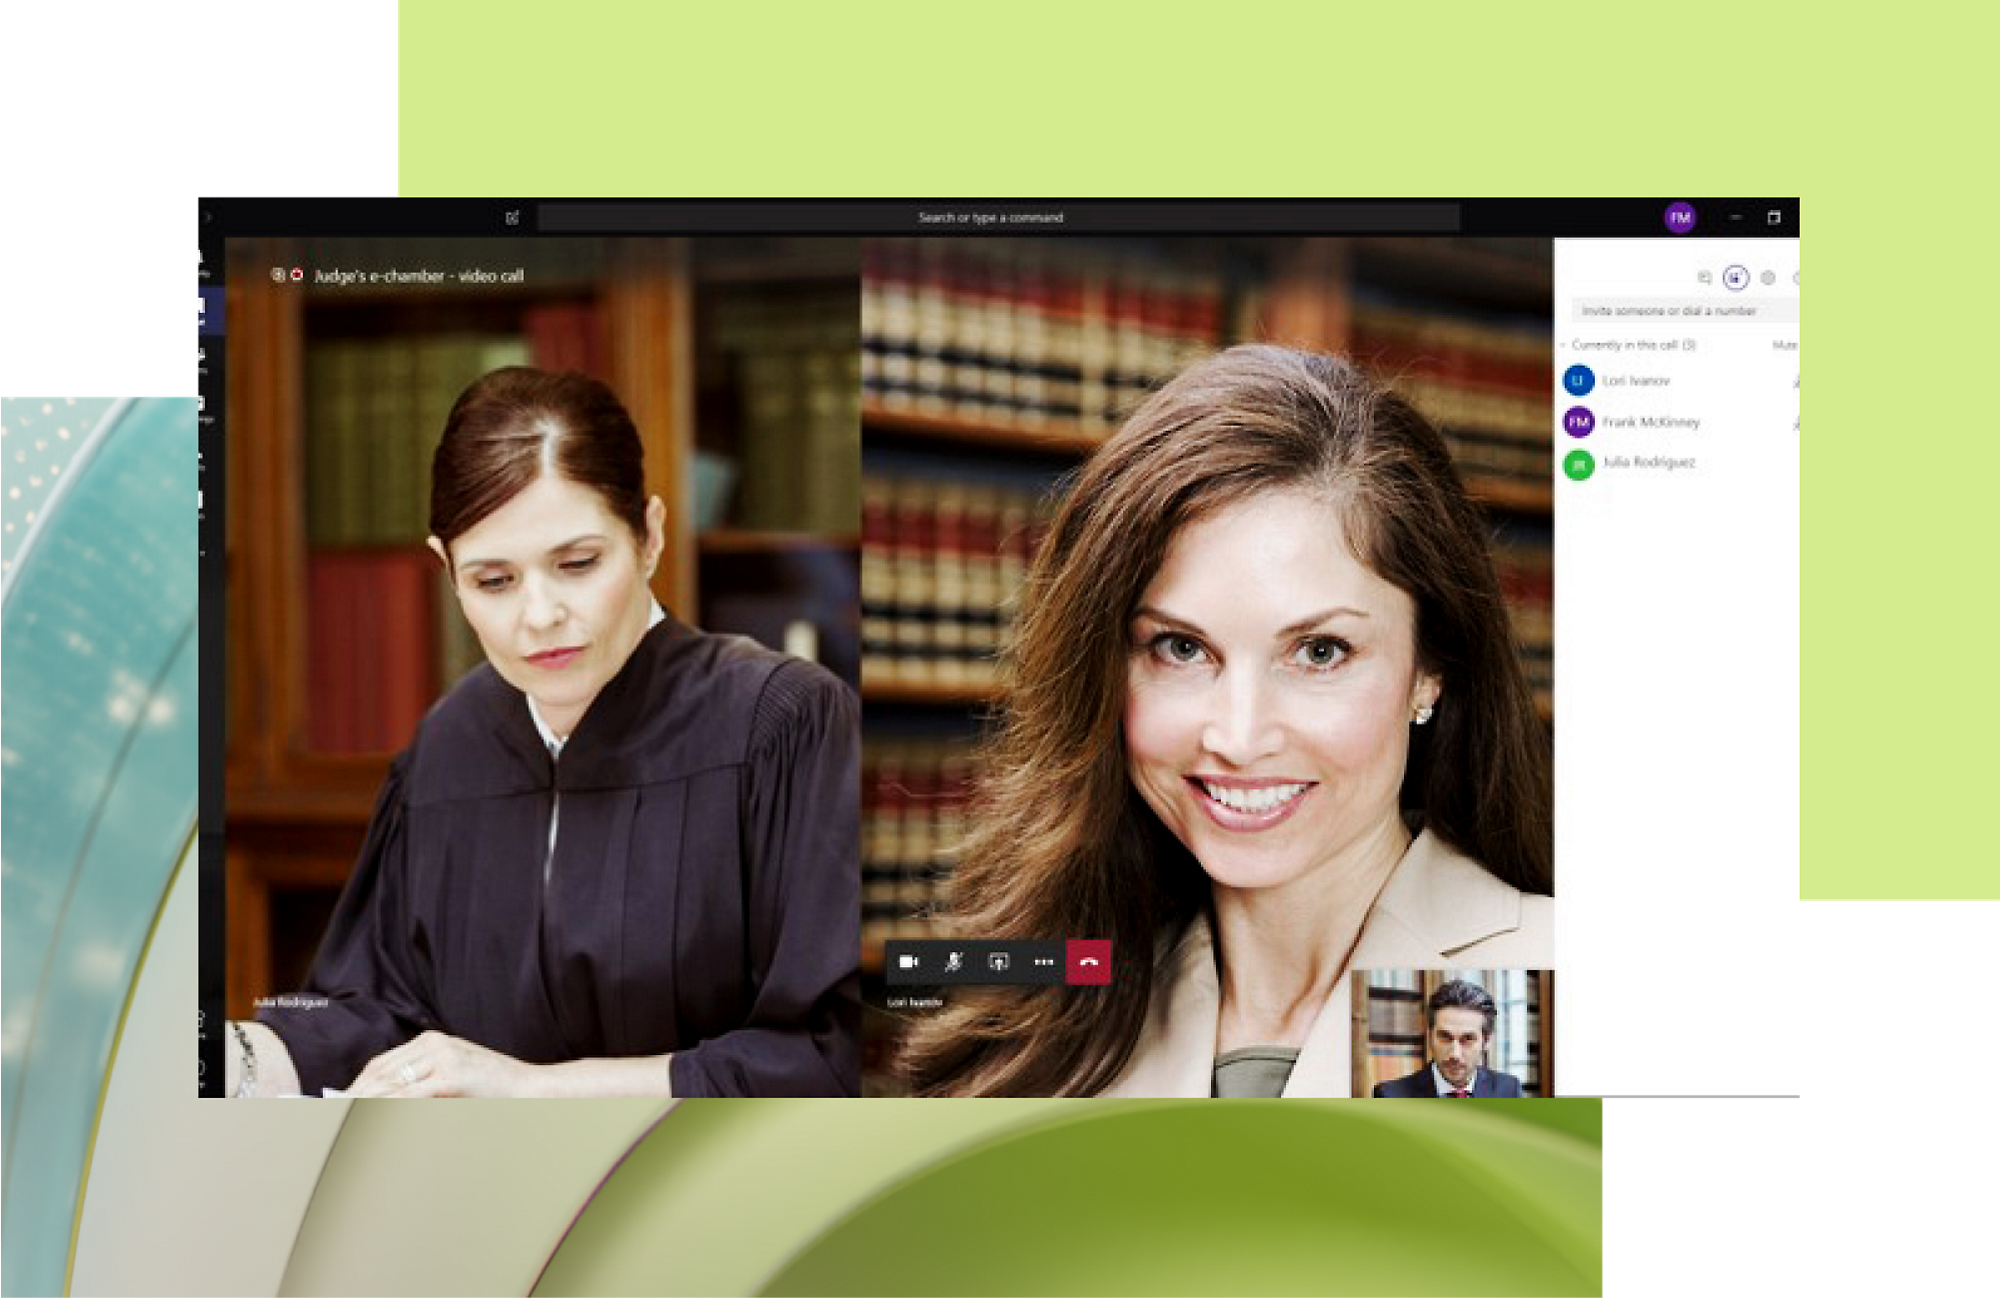 Жінка в суддівській мантії дивиться на документ; накладено інтерфейс відеовиклику, на якому видно усміхнену жінку та чоловіка 